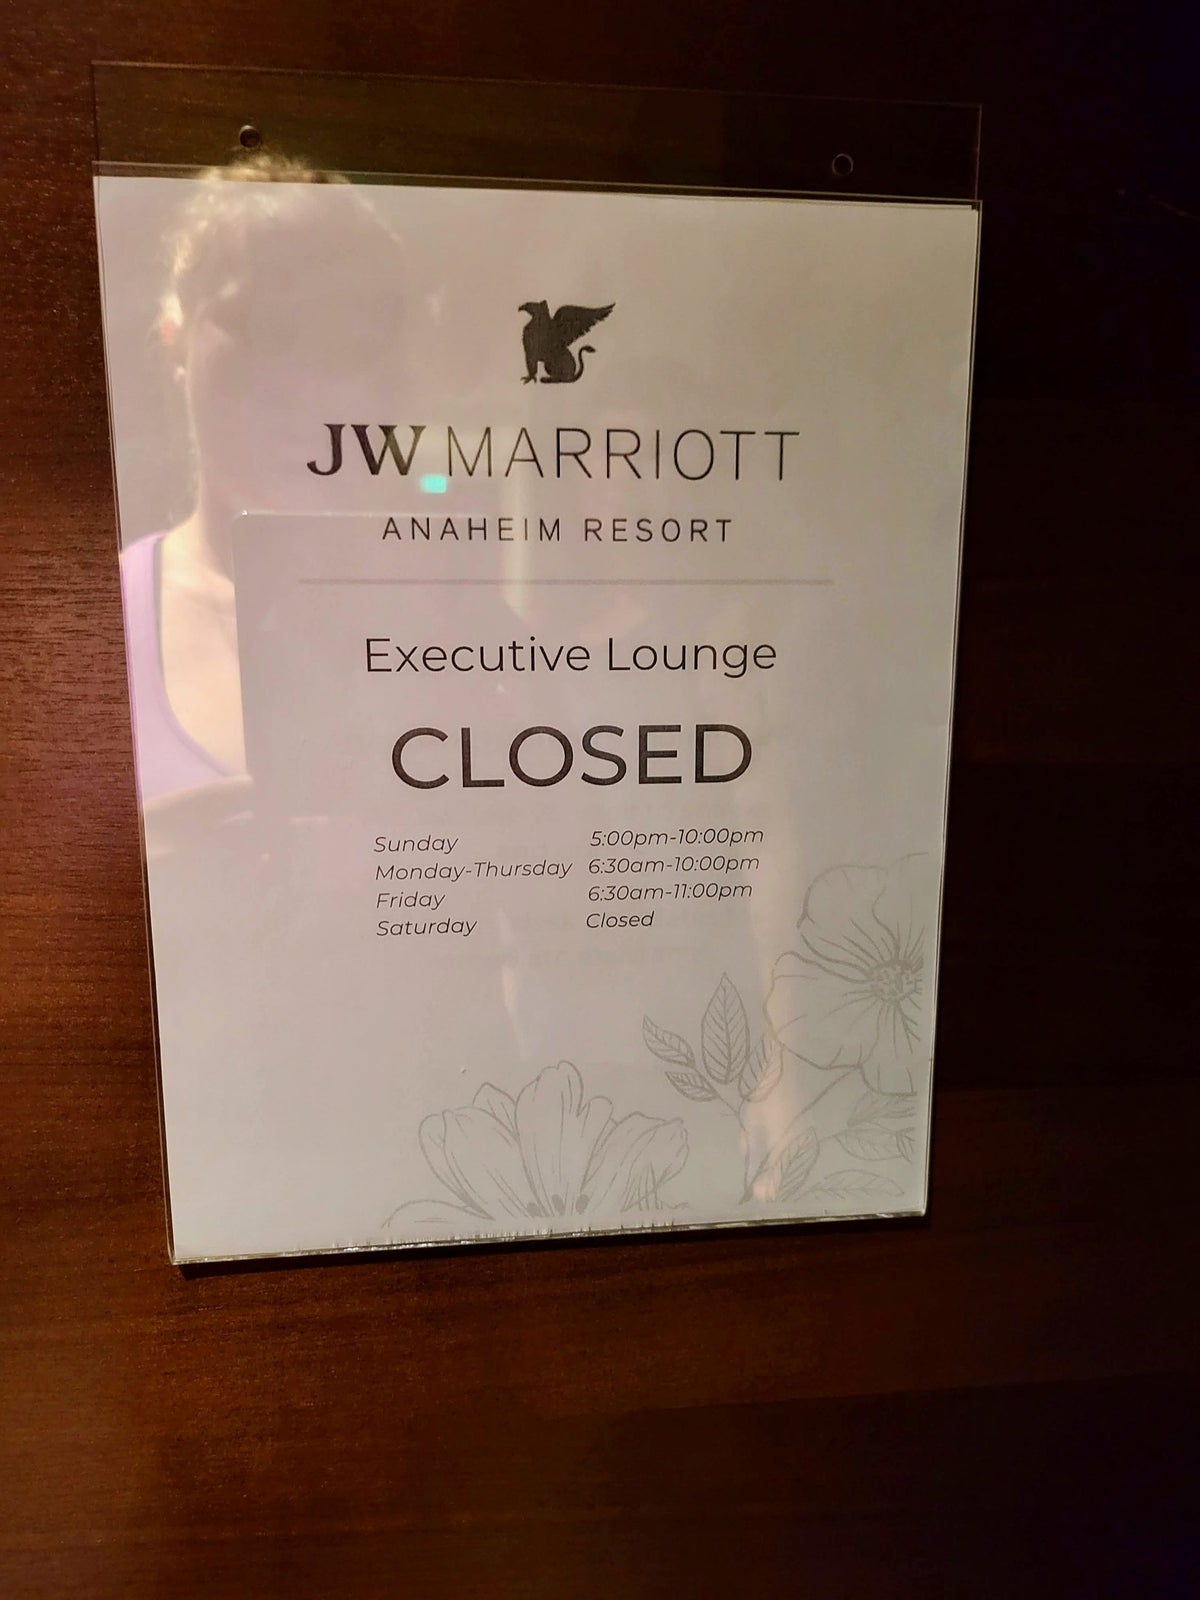 JW Marriott, Anaheim Resort lounge hours